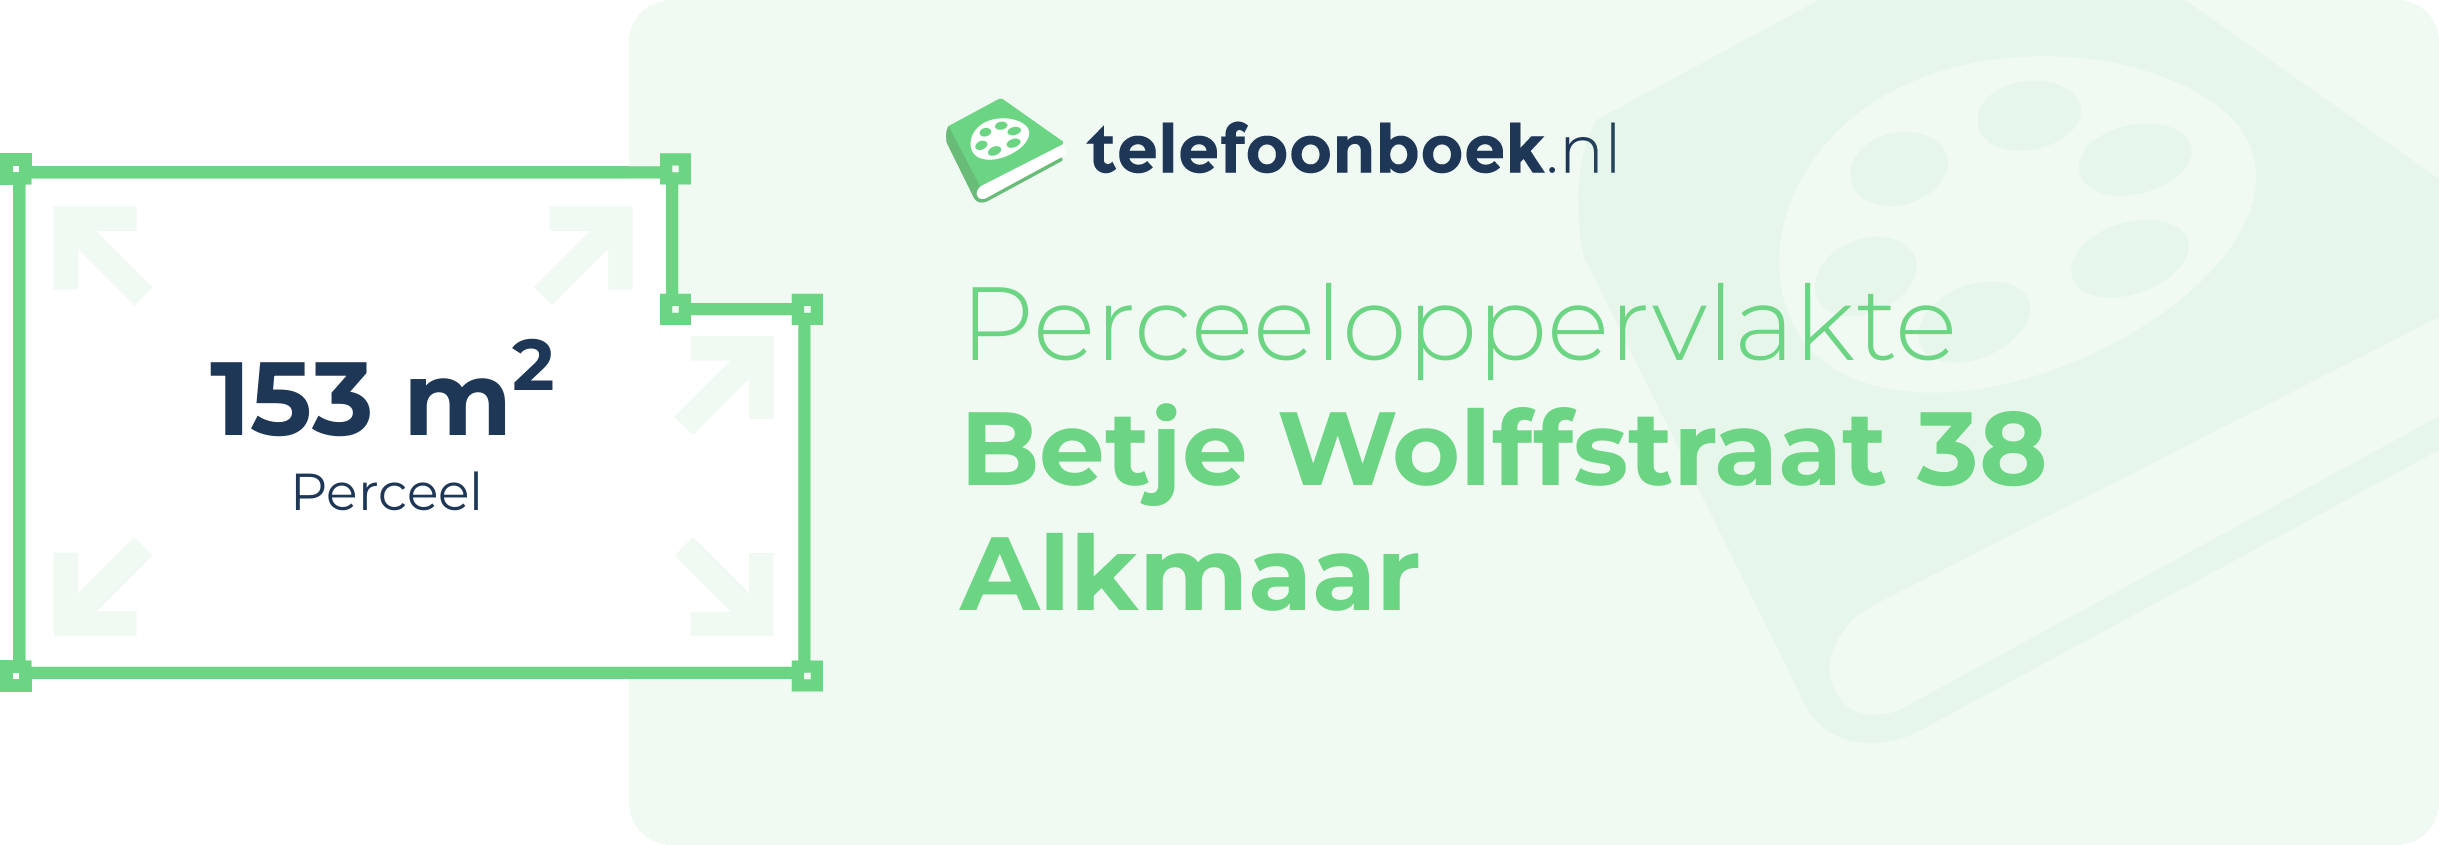 Perceeloppervlakte Betje Wolffstraat 38 Alkmaar